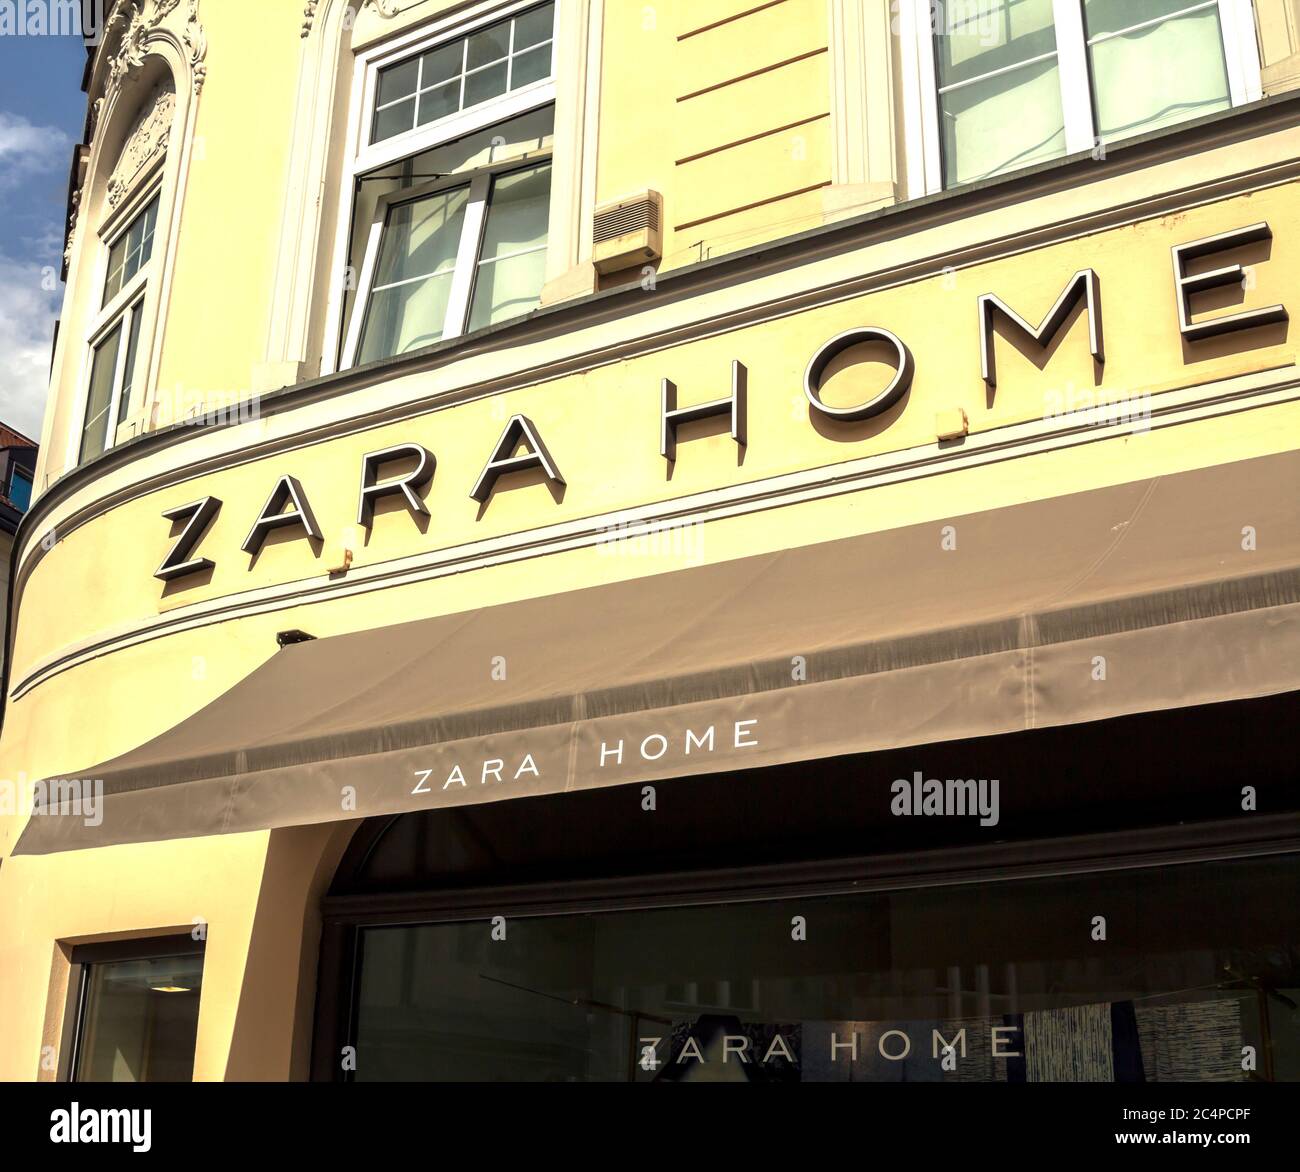 Munich, ALEMANIA : ZARA HOME Store en Munich, Alemania.Zara Home es una  empresa perteneciente al grupo Inditex español dedicada a la fabricación de  h Fotografía de stock - Alamy